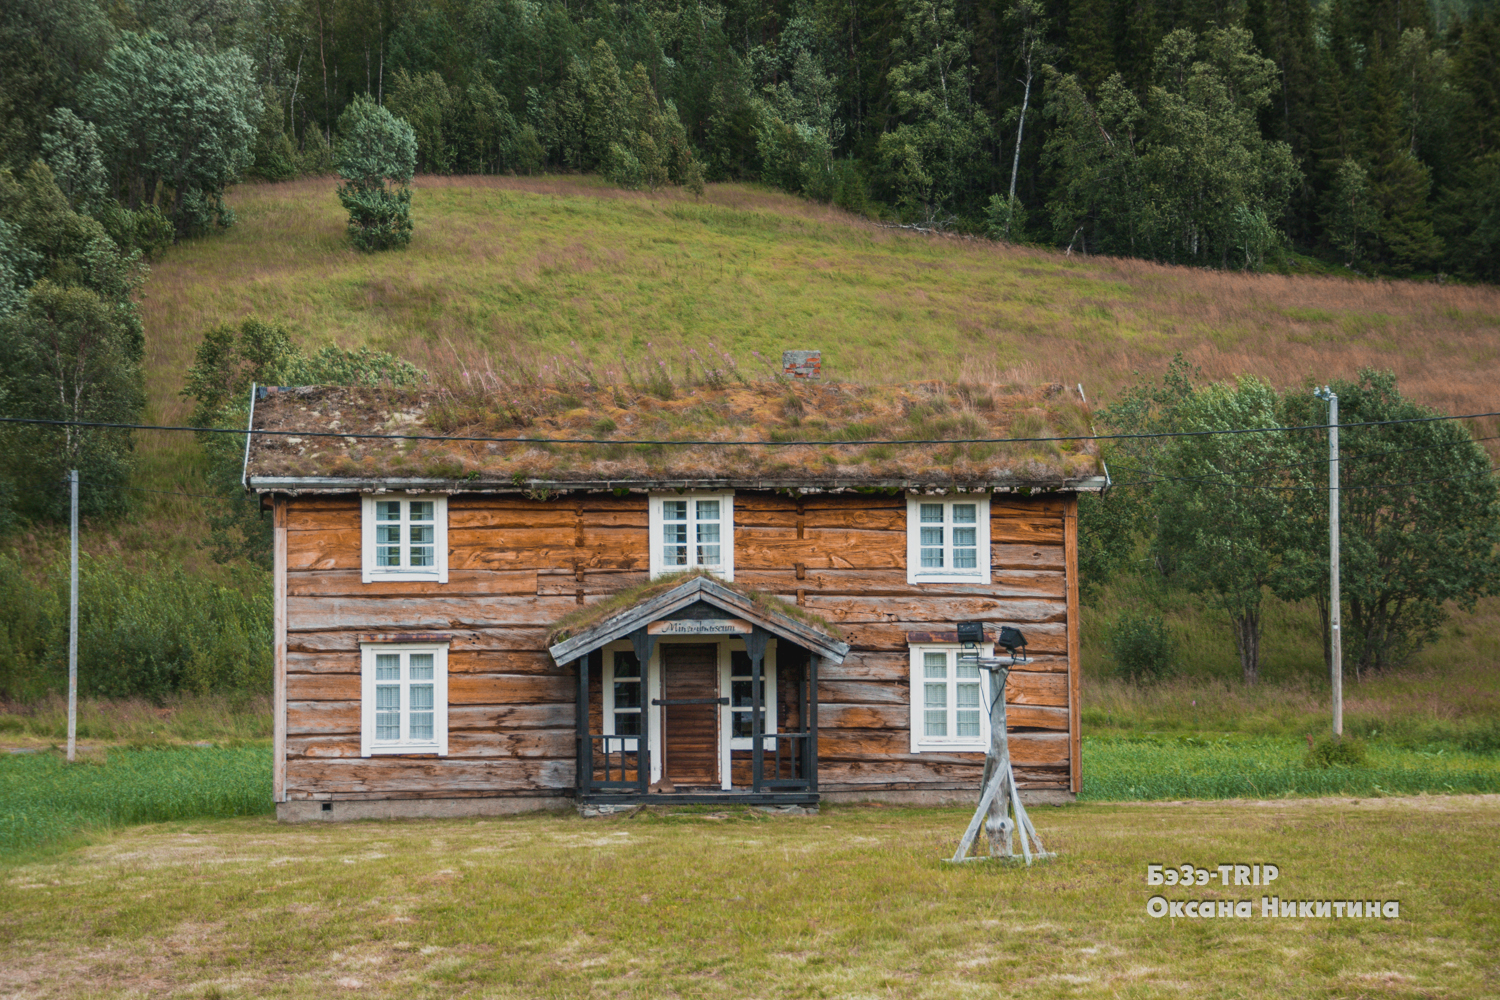 Овцы, которые пасутся на крыше дома. Зачем норвежцам трава на кровле и как над ними поэтому шутят соседи?:)4